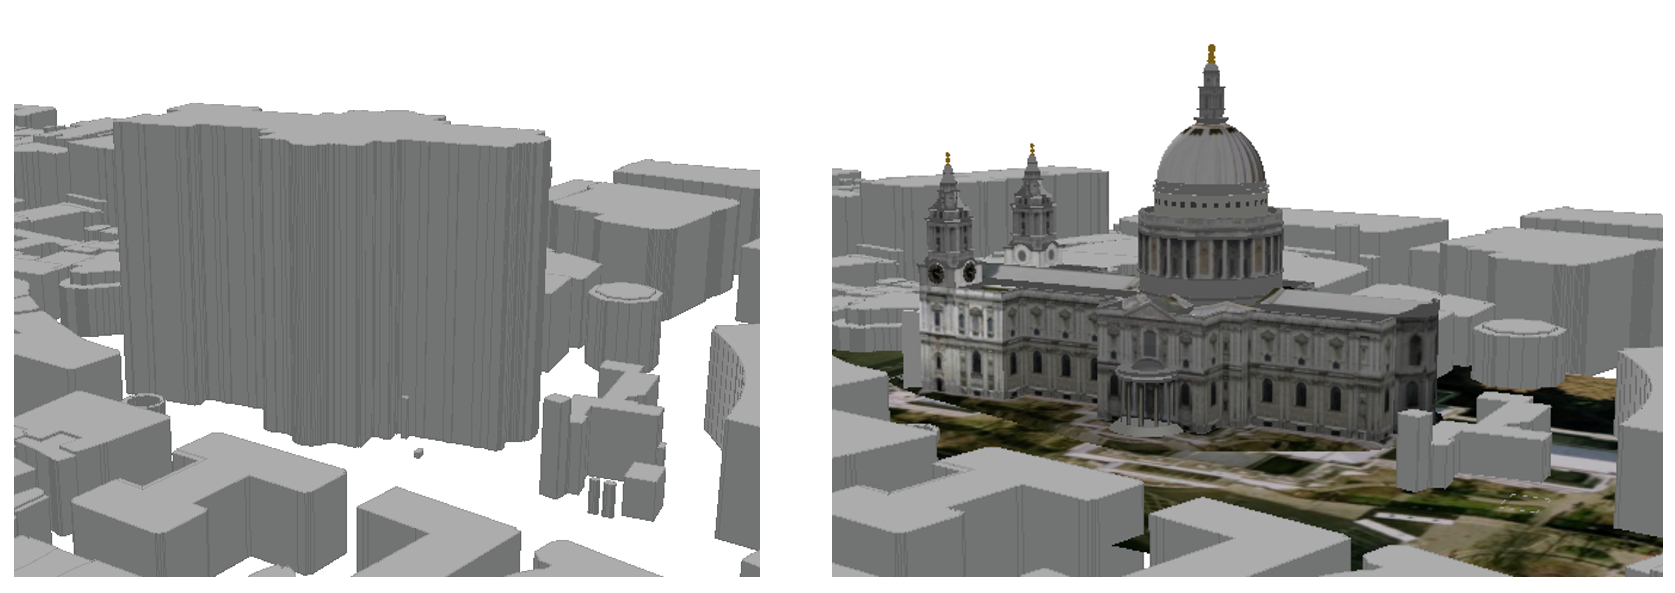 Simple block model vs 3D model of St Pauls